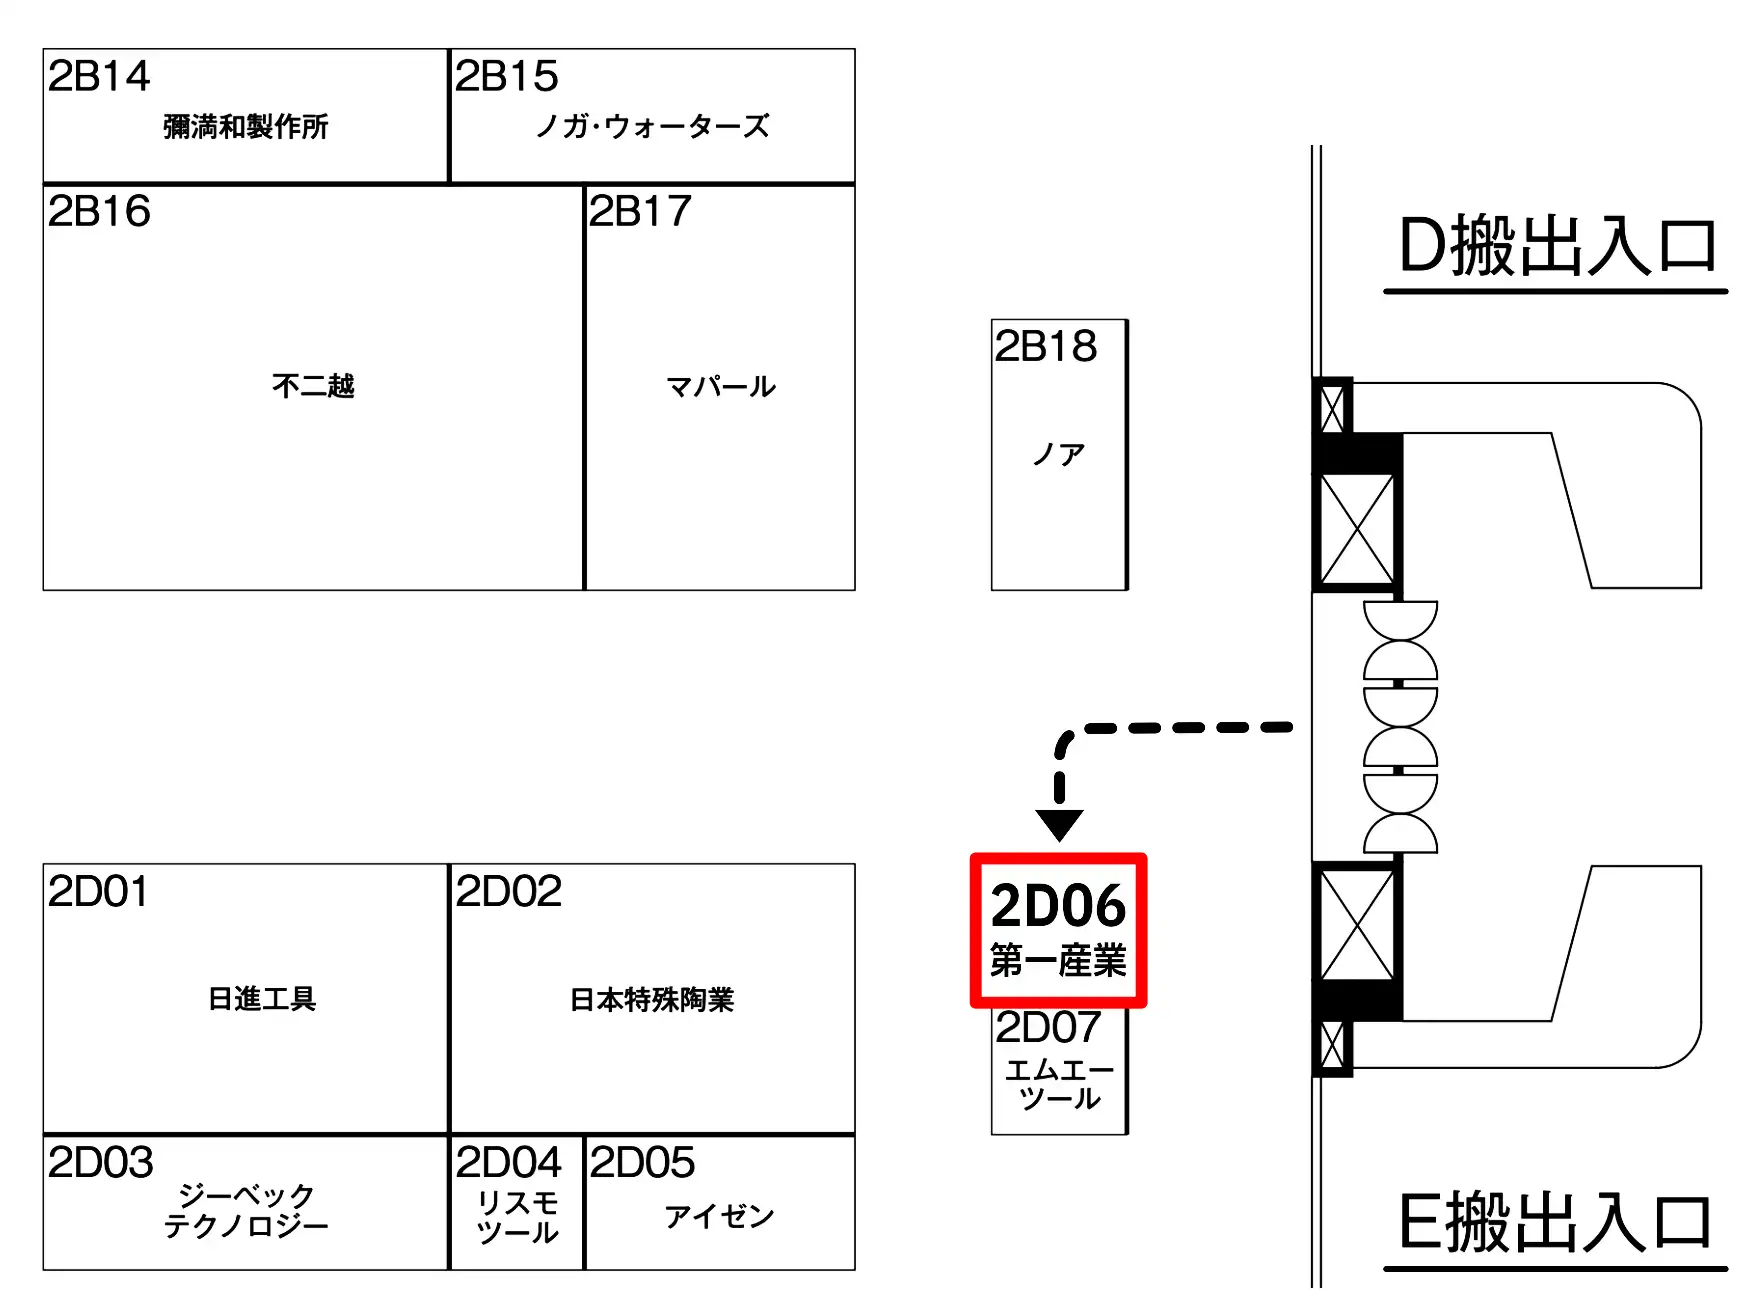 2D06第一産業 2B18ノア 2B15ノガウォーターズ 2D02日本特殊陶業 2D01日進工具 2D05アイゼン